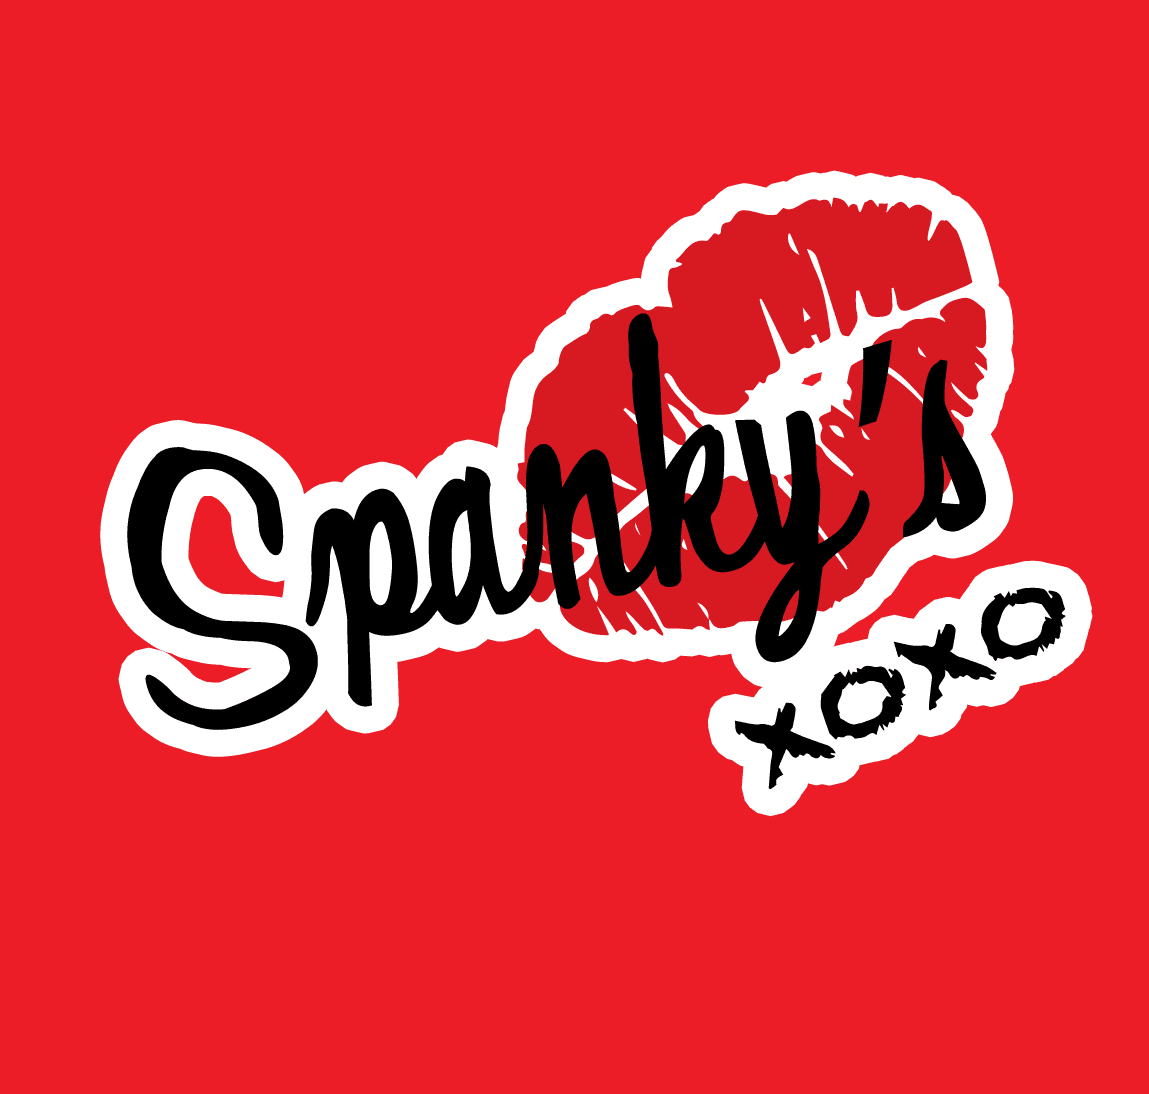 Spankys